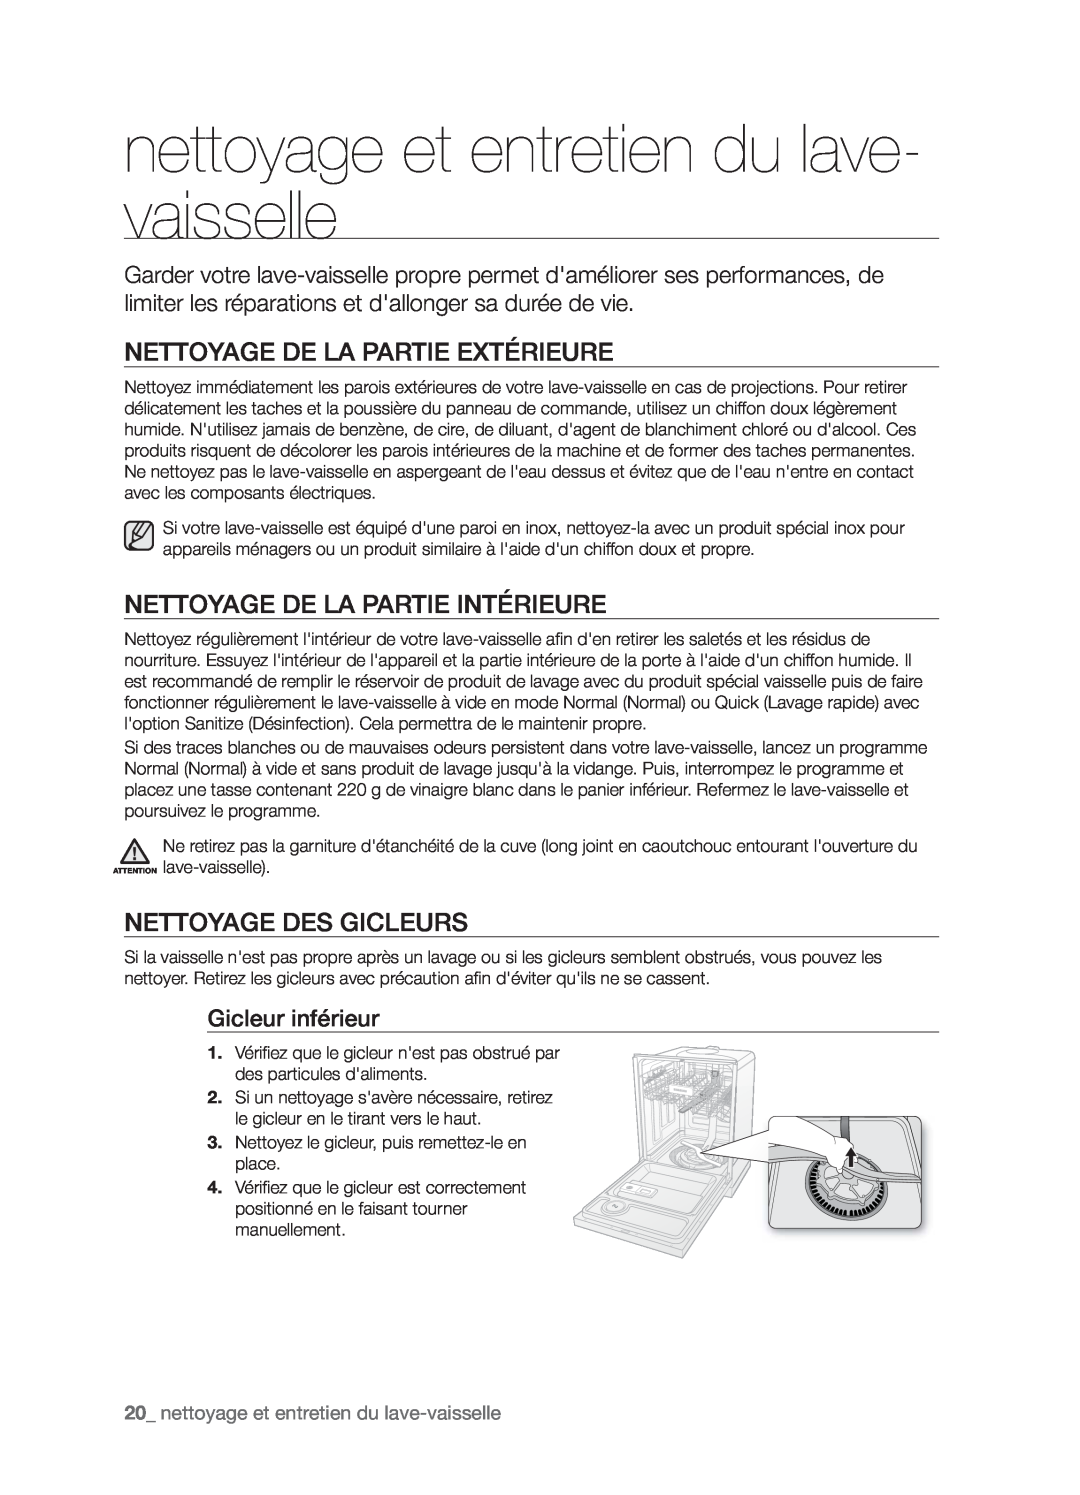 Samsung DMT800RHW nettoyage et entretien du lave- vaisselle, Nettoyage De La Partie Extérieure, Nettoyage Des Gicleurs 